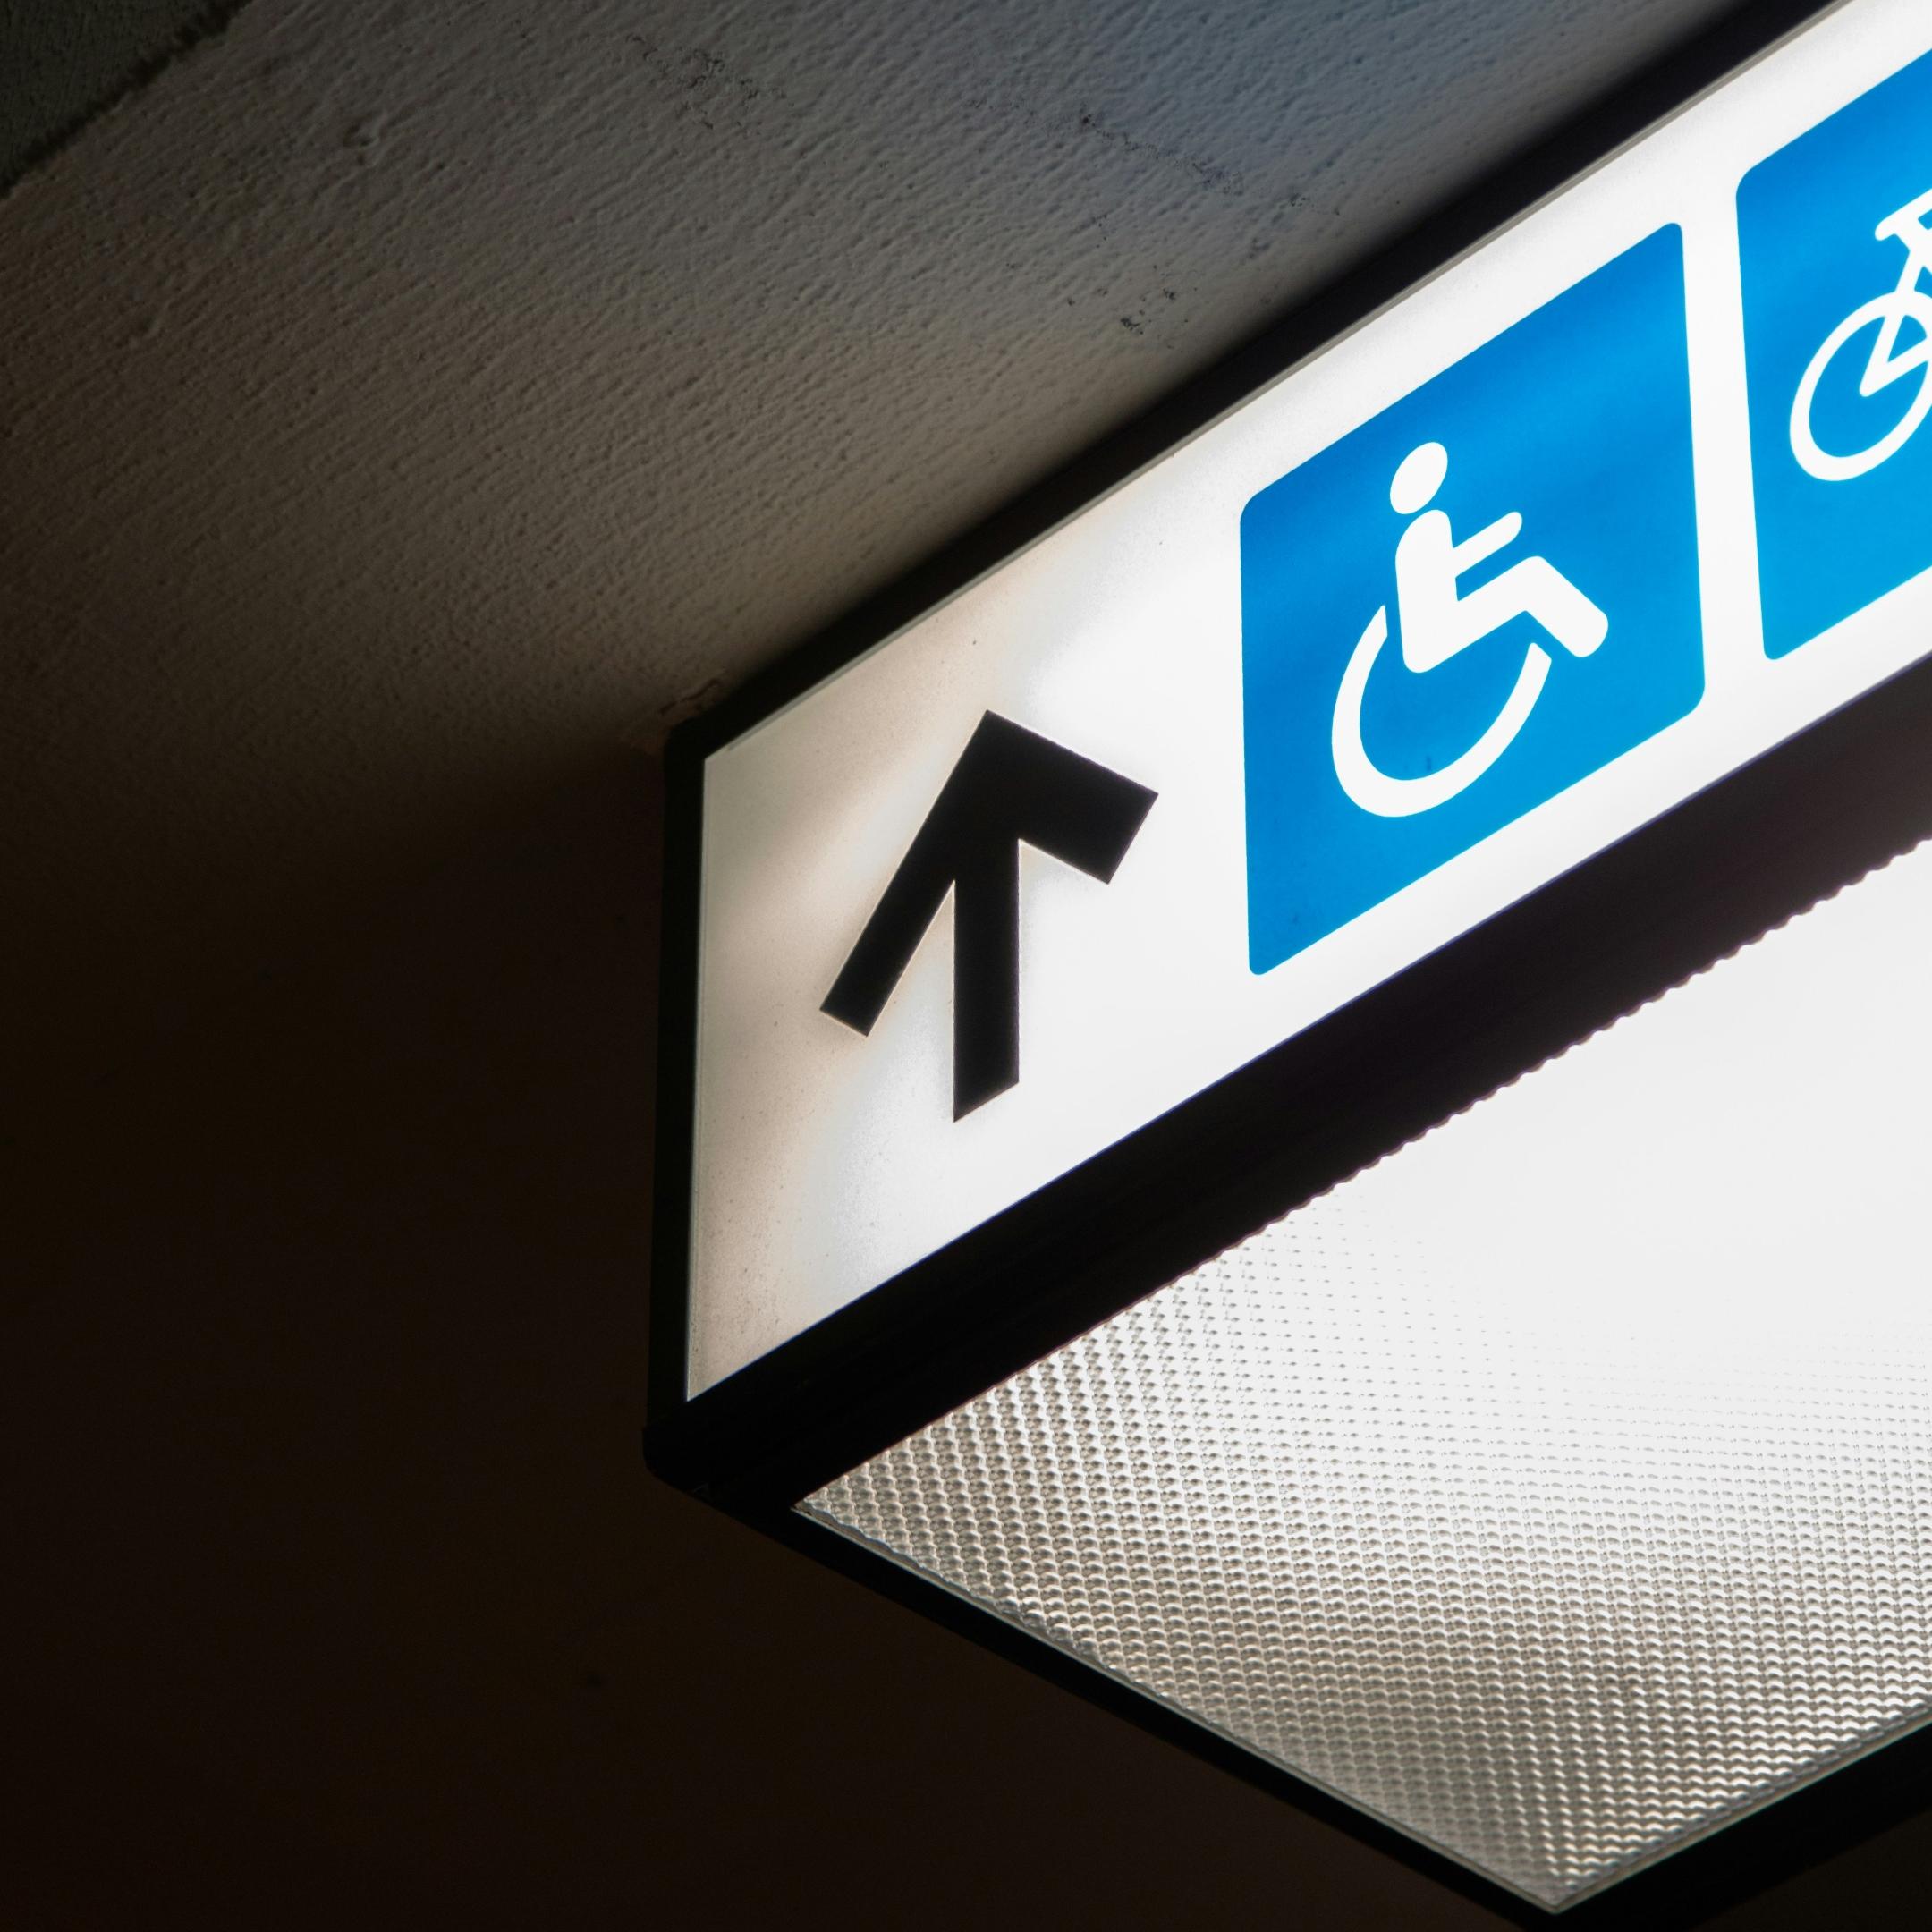 Hinweisschild Barrierefreiheit für Menschen mit Mobilitätseinschränkungen, Symbolbild Rollstuhlfahrer auf blauem Hintergrund